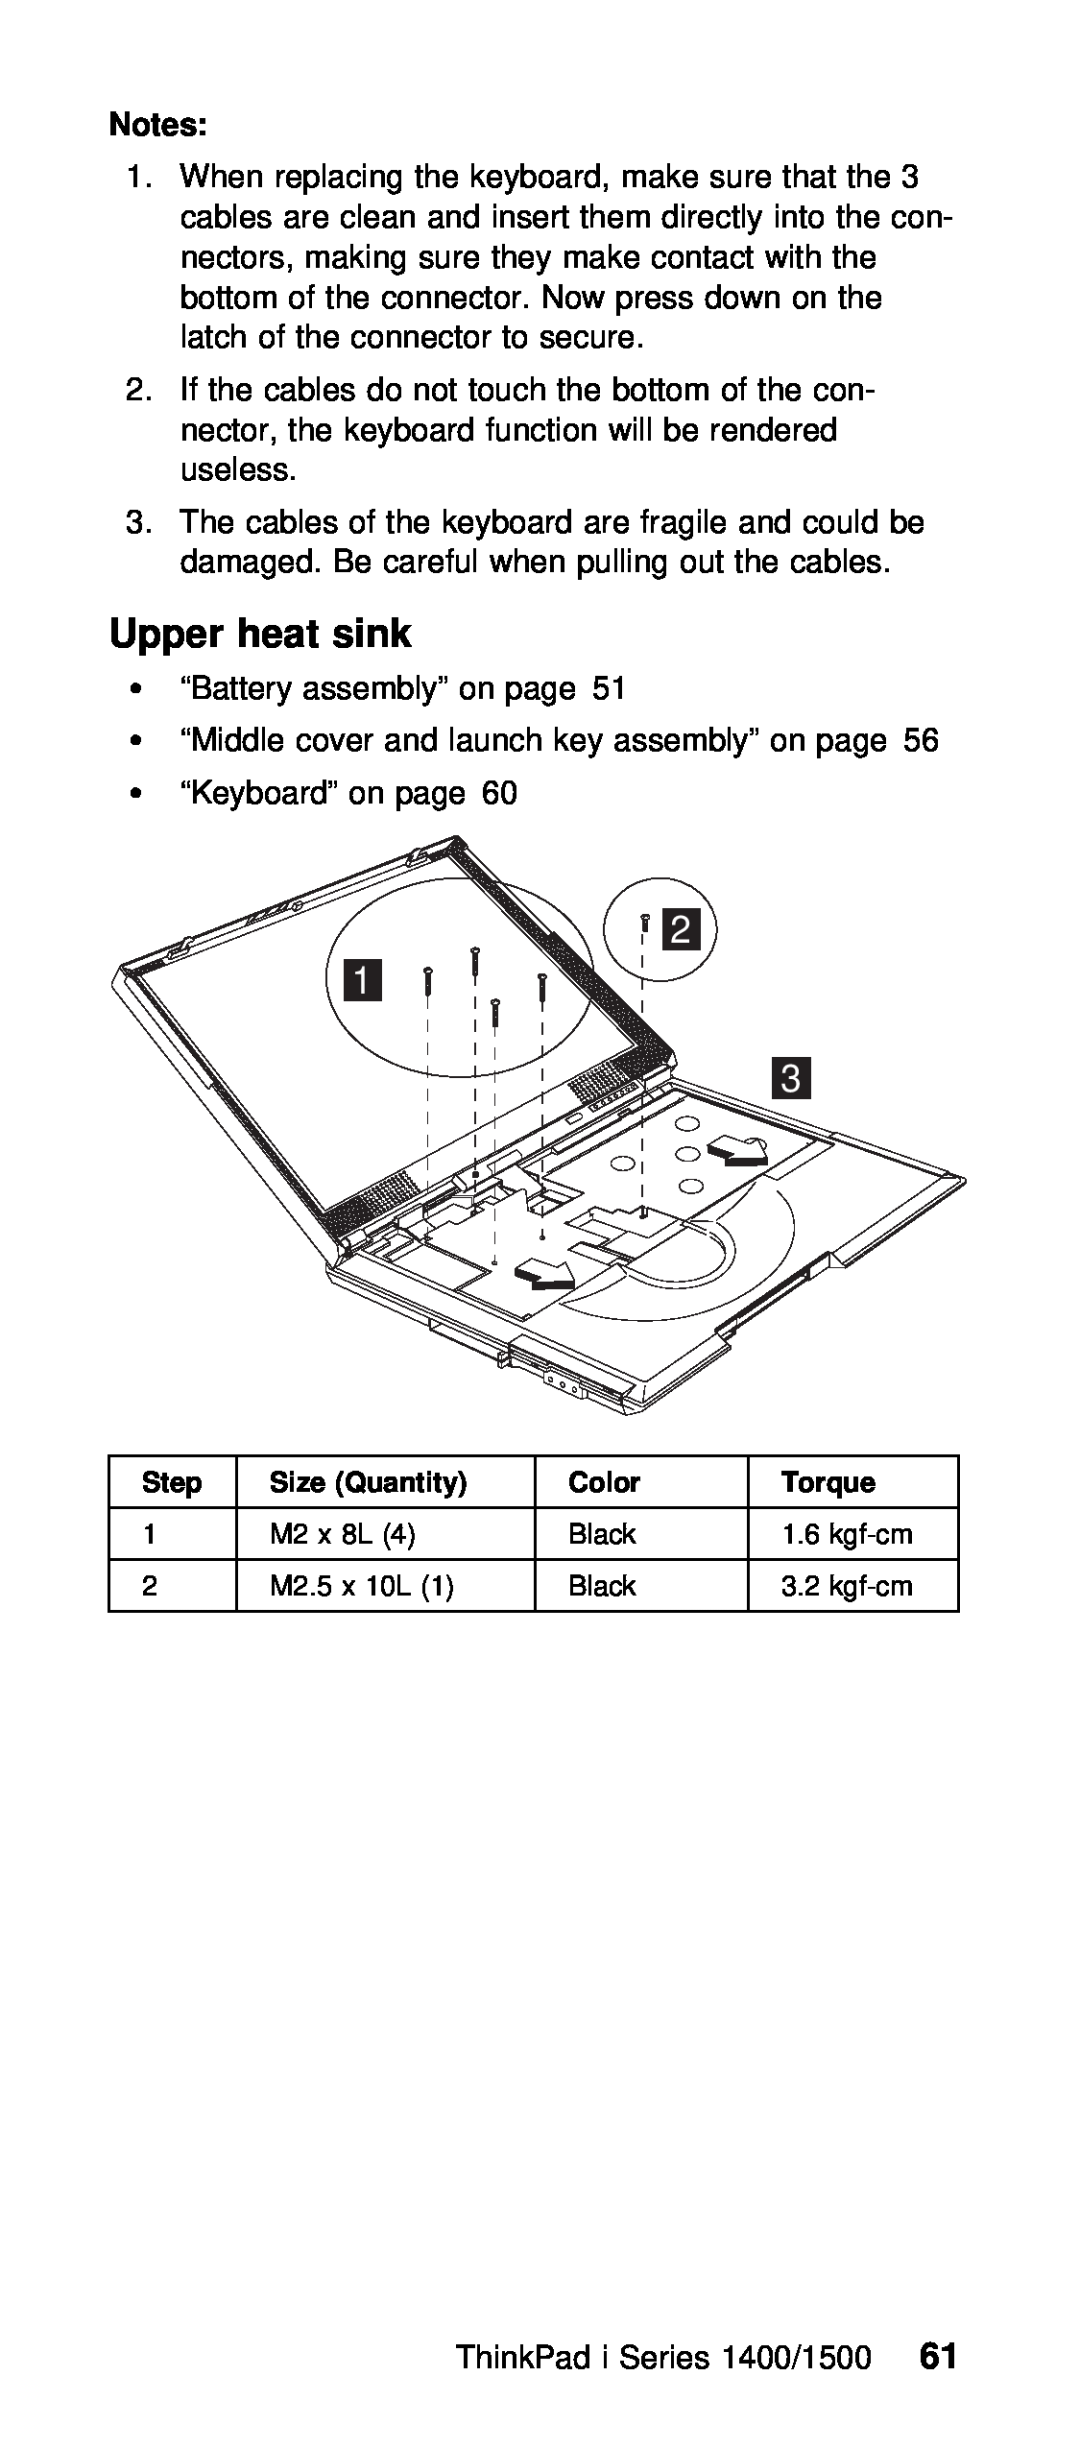 IBM Series 1400, Series 1500 manual Upper heat sink, Torque 